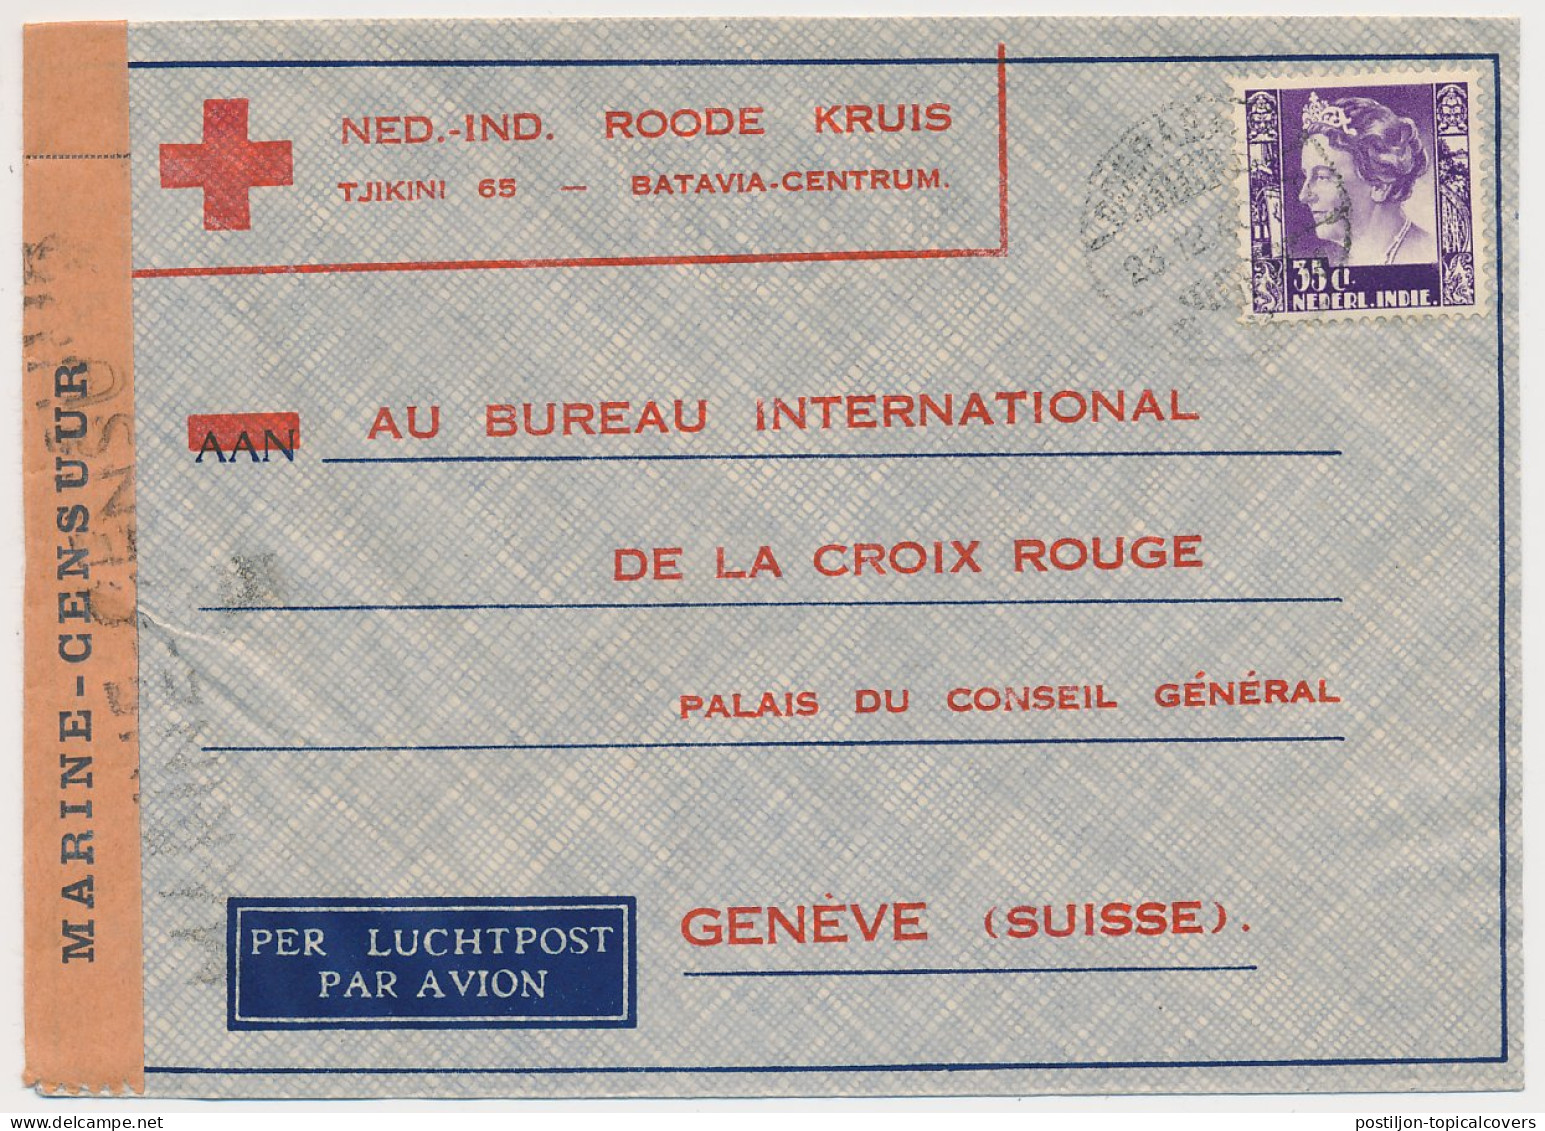 Navy - Marine Censuur Neth. Indies - Red Cross Switzerland 1940 - Netherlands Indies